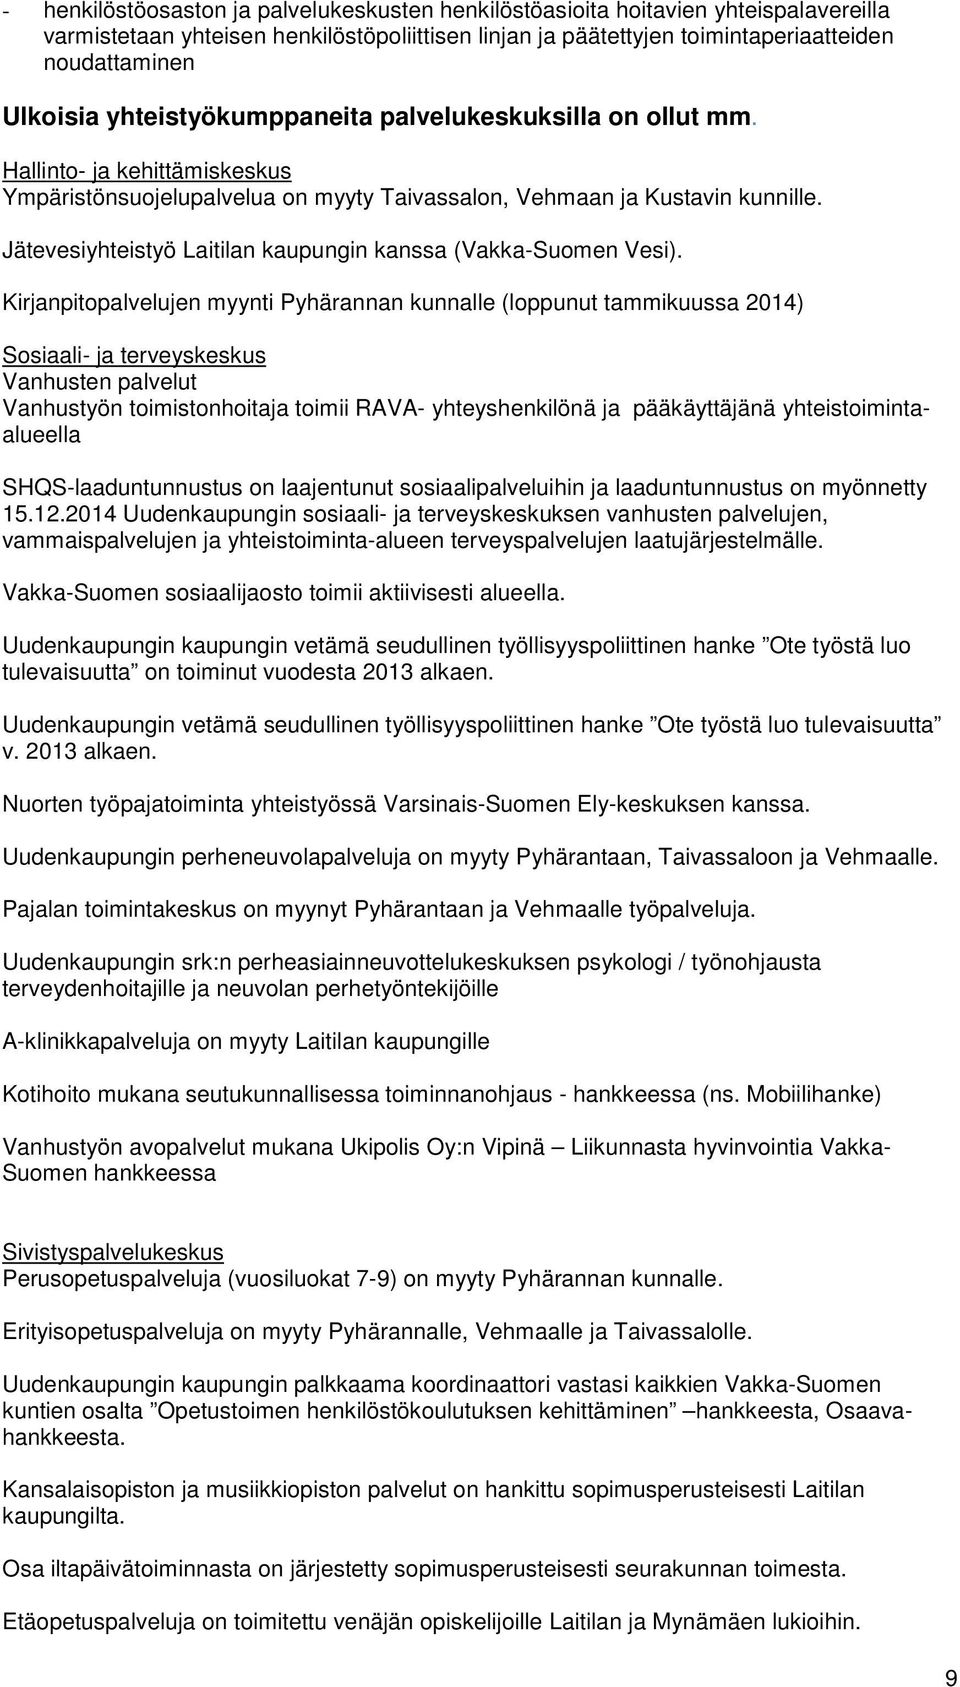 Jätevesiyhteistyö Laitilan kaupungin kanssa (Vakka-Suomen Vesi).